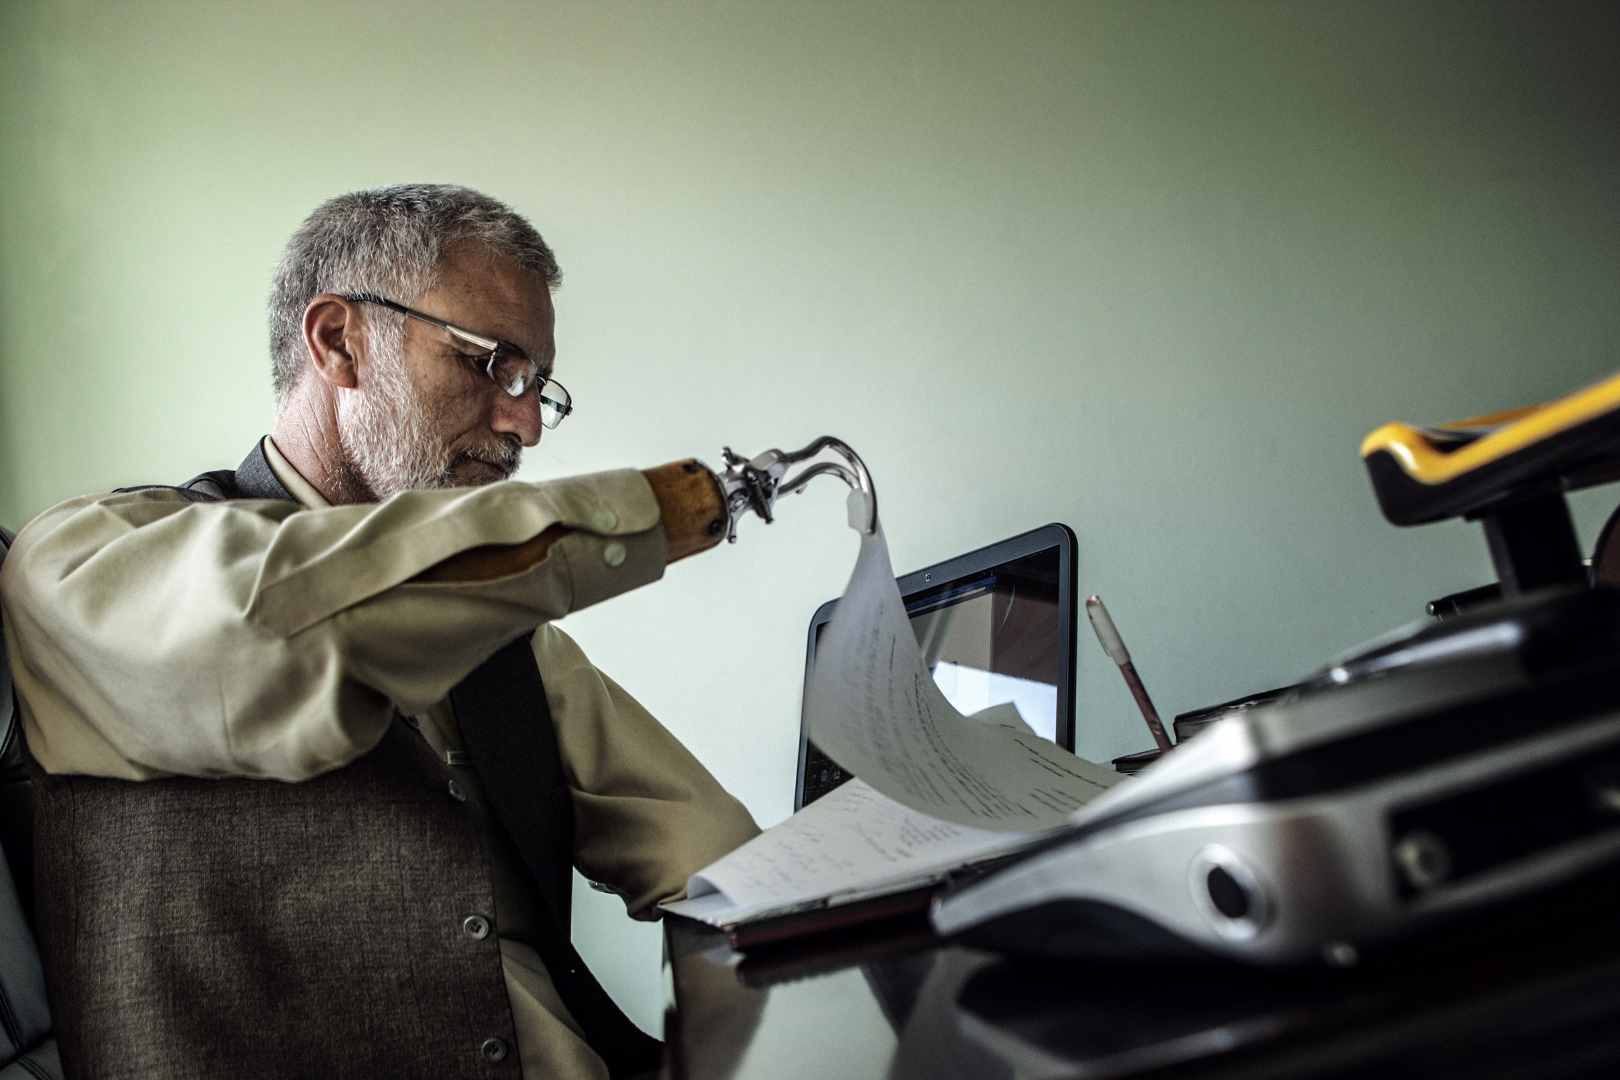 Pildi vasakus servas on halli siilisoengu ja prillidega mees, seljas kollakasvalge triiksärk ja tume vest. Mees on küljega vaataja poole, näoga paremale. Mehe parem käsivars on tõstetud, selle otsas olev metallist traatsilmuse moodi protees tõstab tema ees oleval kaldlaual paberipatsaka pealmist lehte. Mehe vasakul käel paistab laual arvutiekraan, esiplaanil on ähmaselt, fookusest väljas, hõbehall seadeldis, mille vaataja poole pööratud tagaküljes on ümmargune pistik. Pildi taust on ühtlaselt kollakashall.